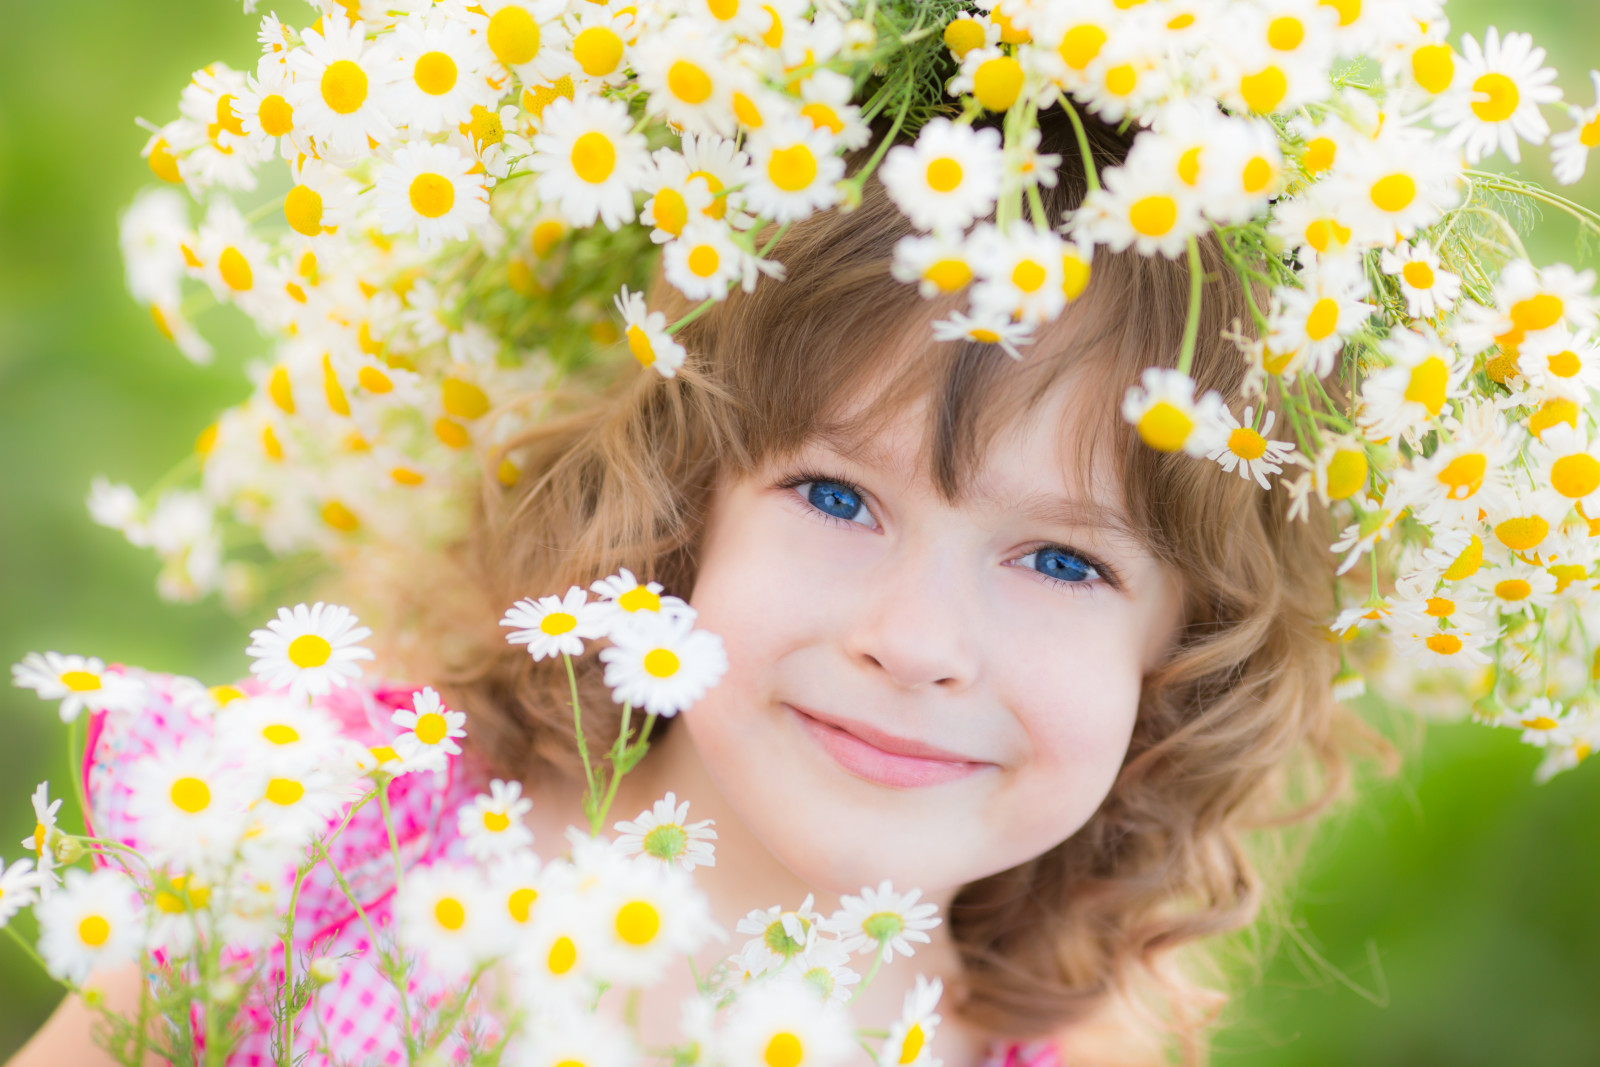 สาว, ยิ้ม, ดอกไม้, เด็ก, พวงหรีด, ตาสีฟ้า